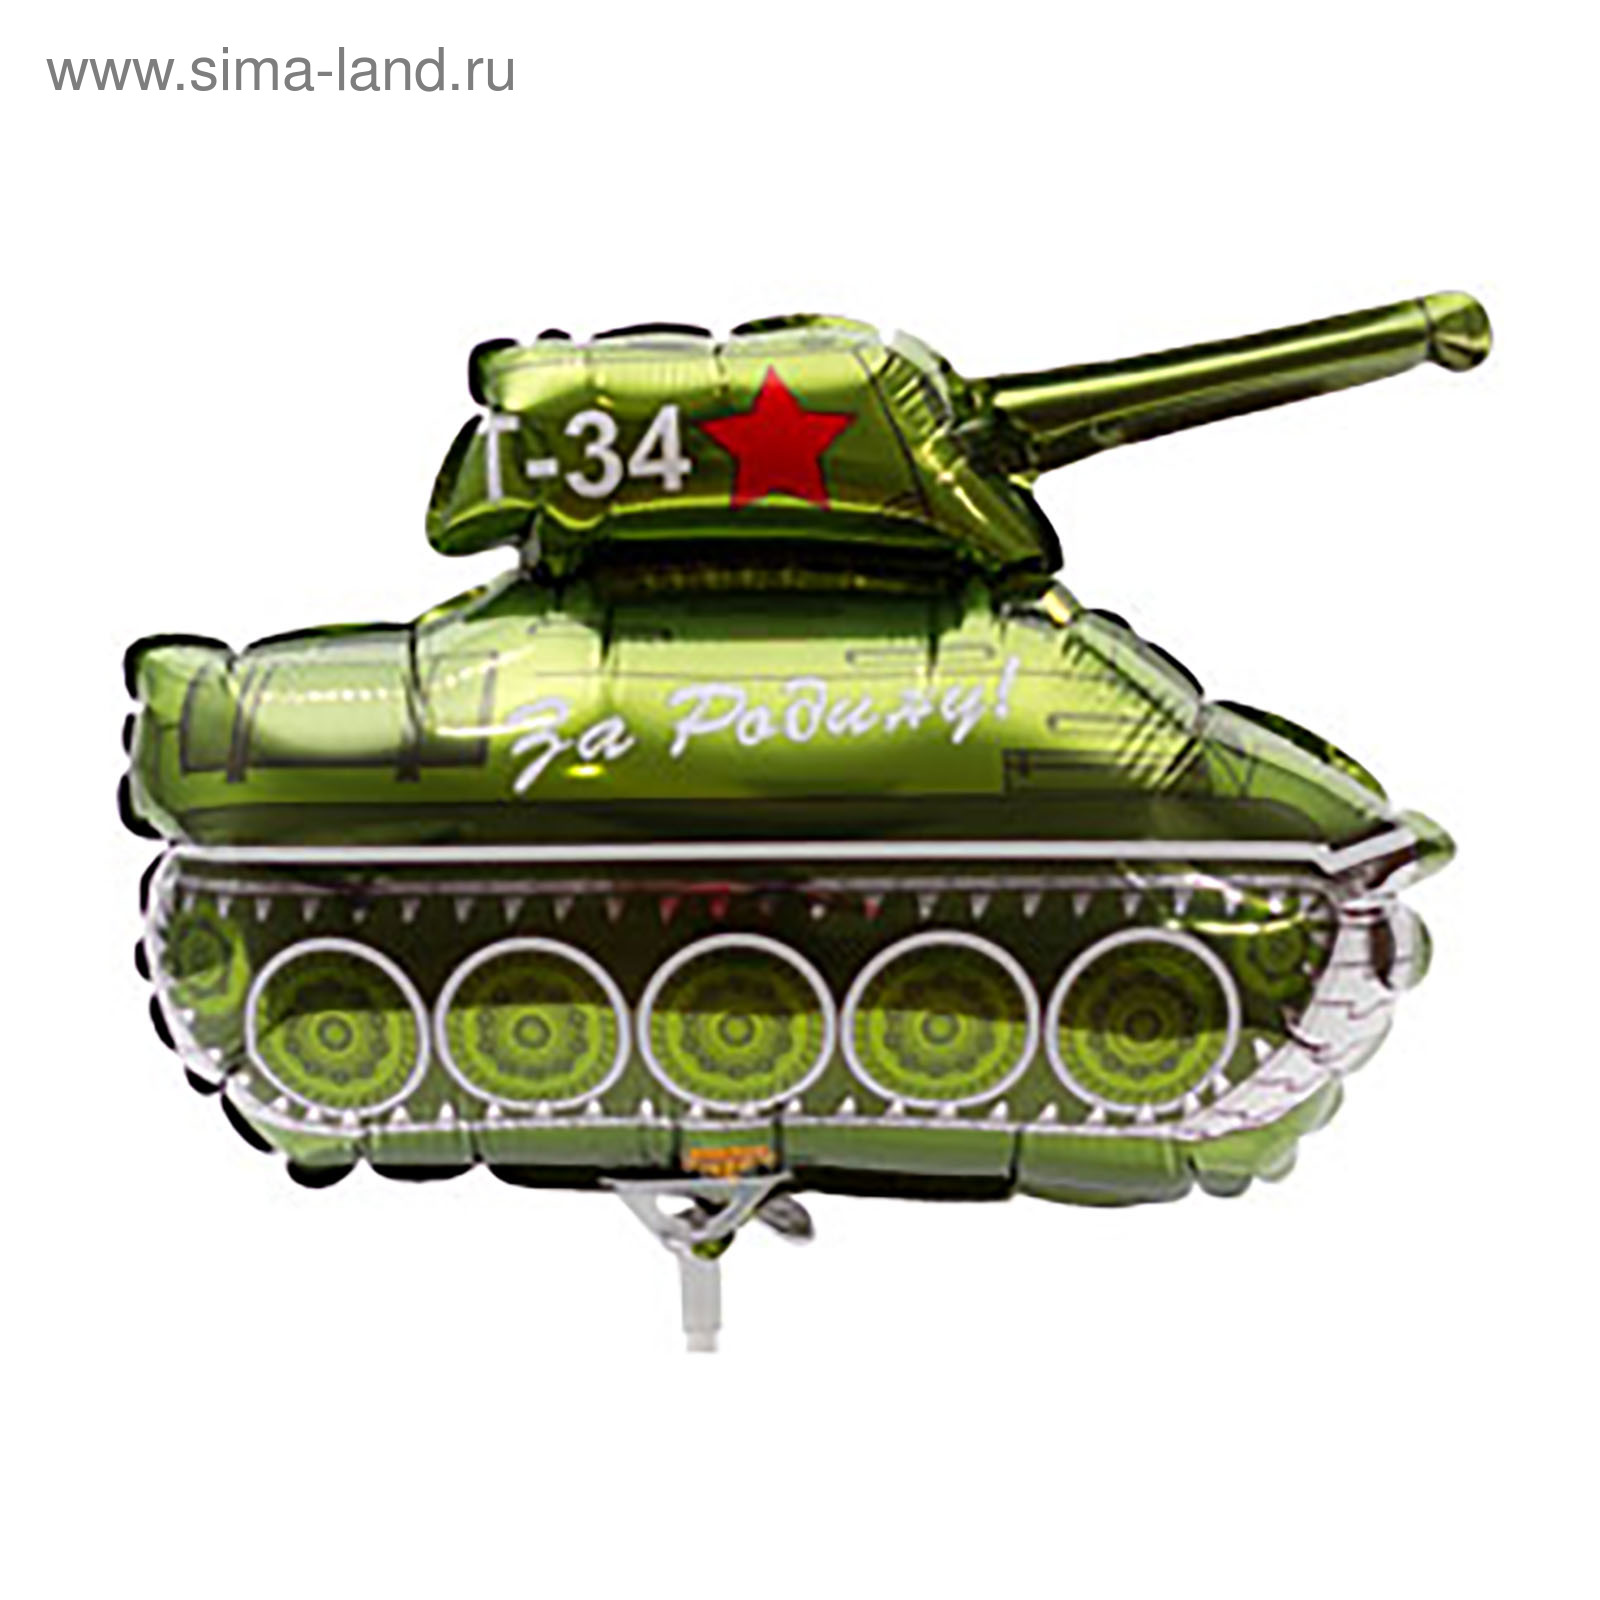 Шар танк т34